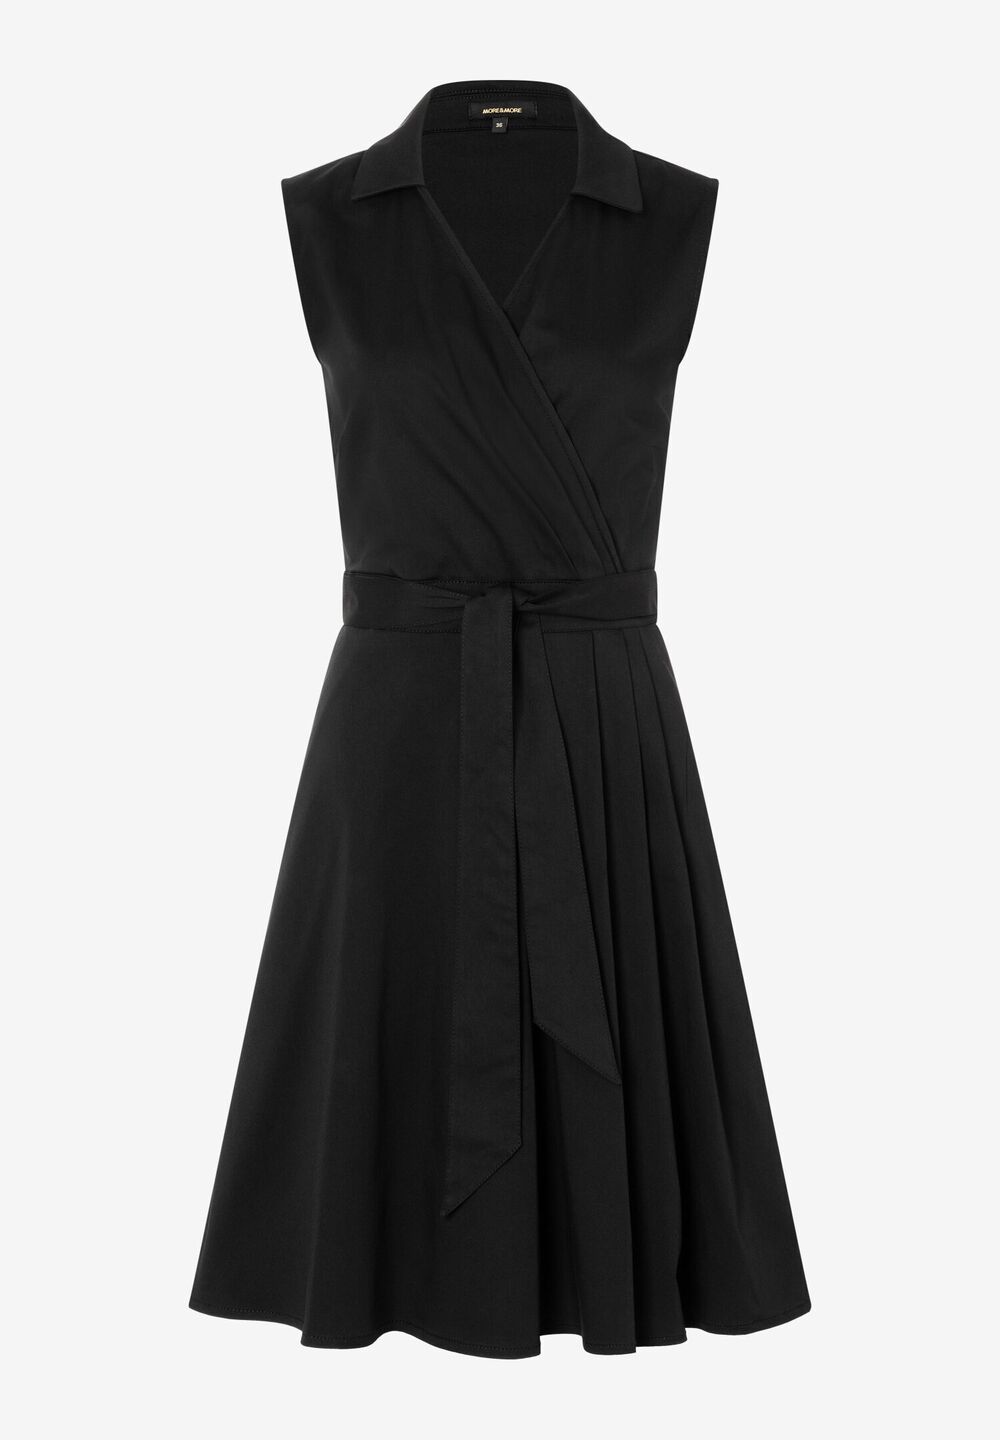 Blusenkleid mit Wickeloptik, schwarz, Sommer-Kollektion, schwarz Frontansicht